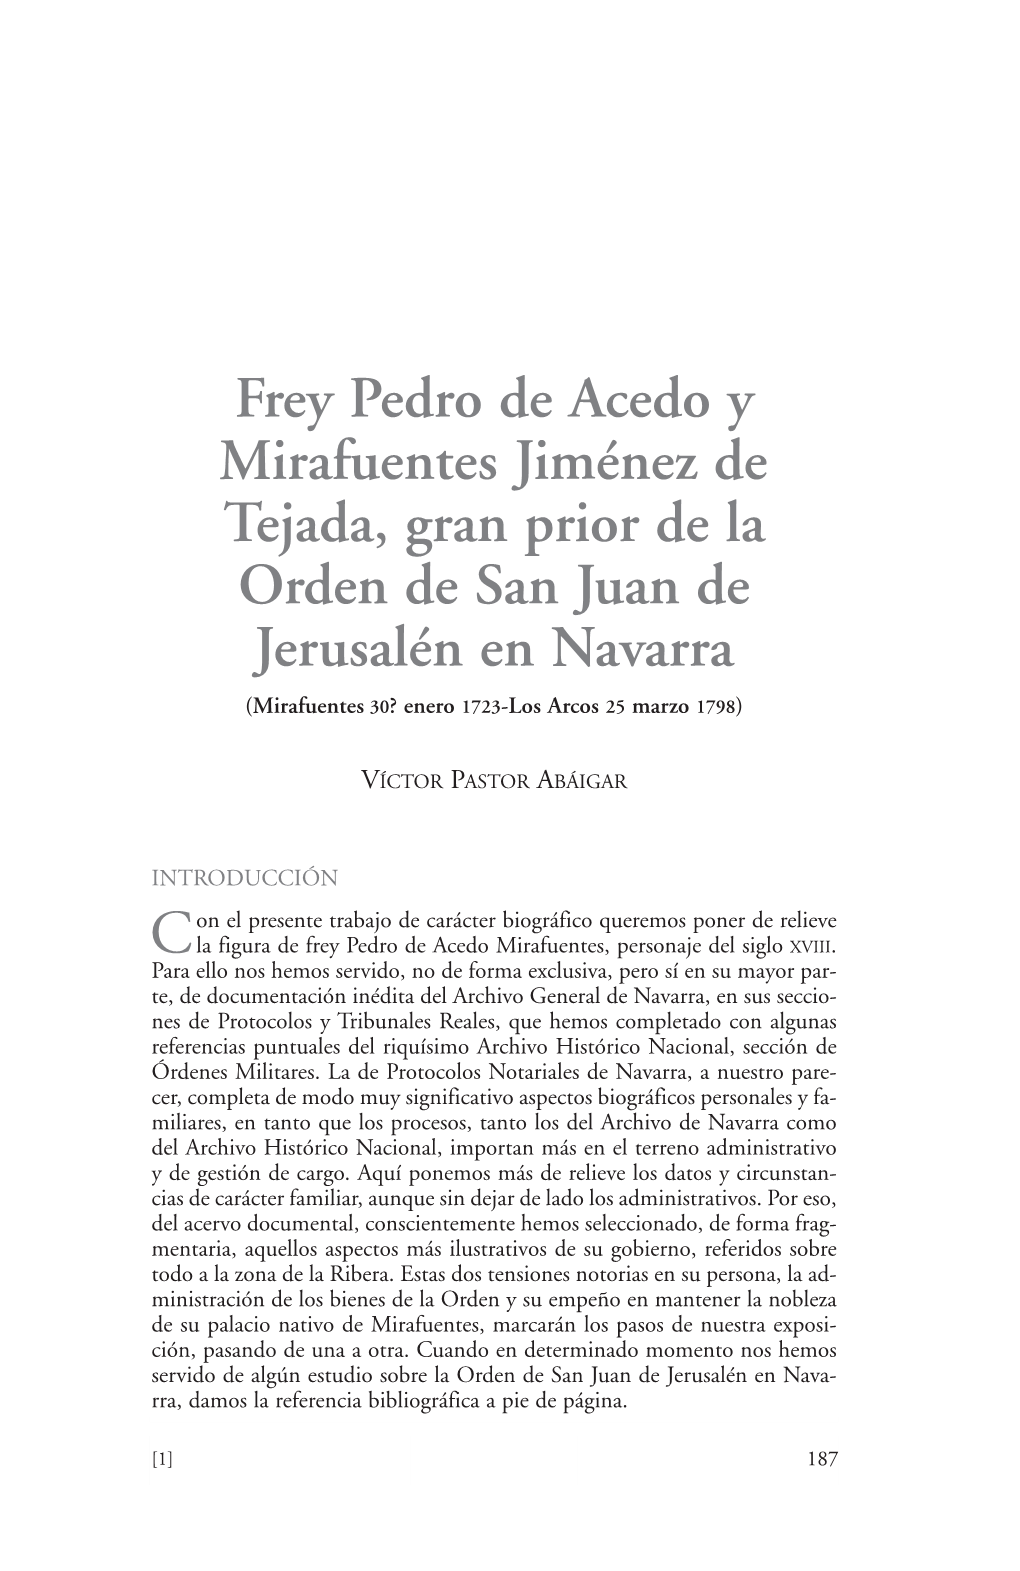 Frey Pedro De Acedo Y Mirafuentes, Gran Prior De La Orden De San Juan De